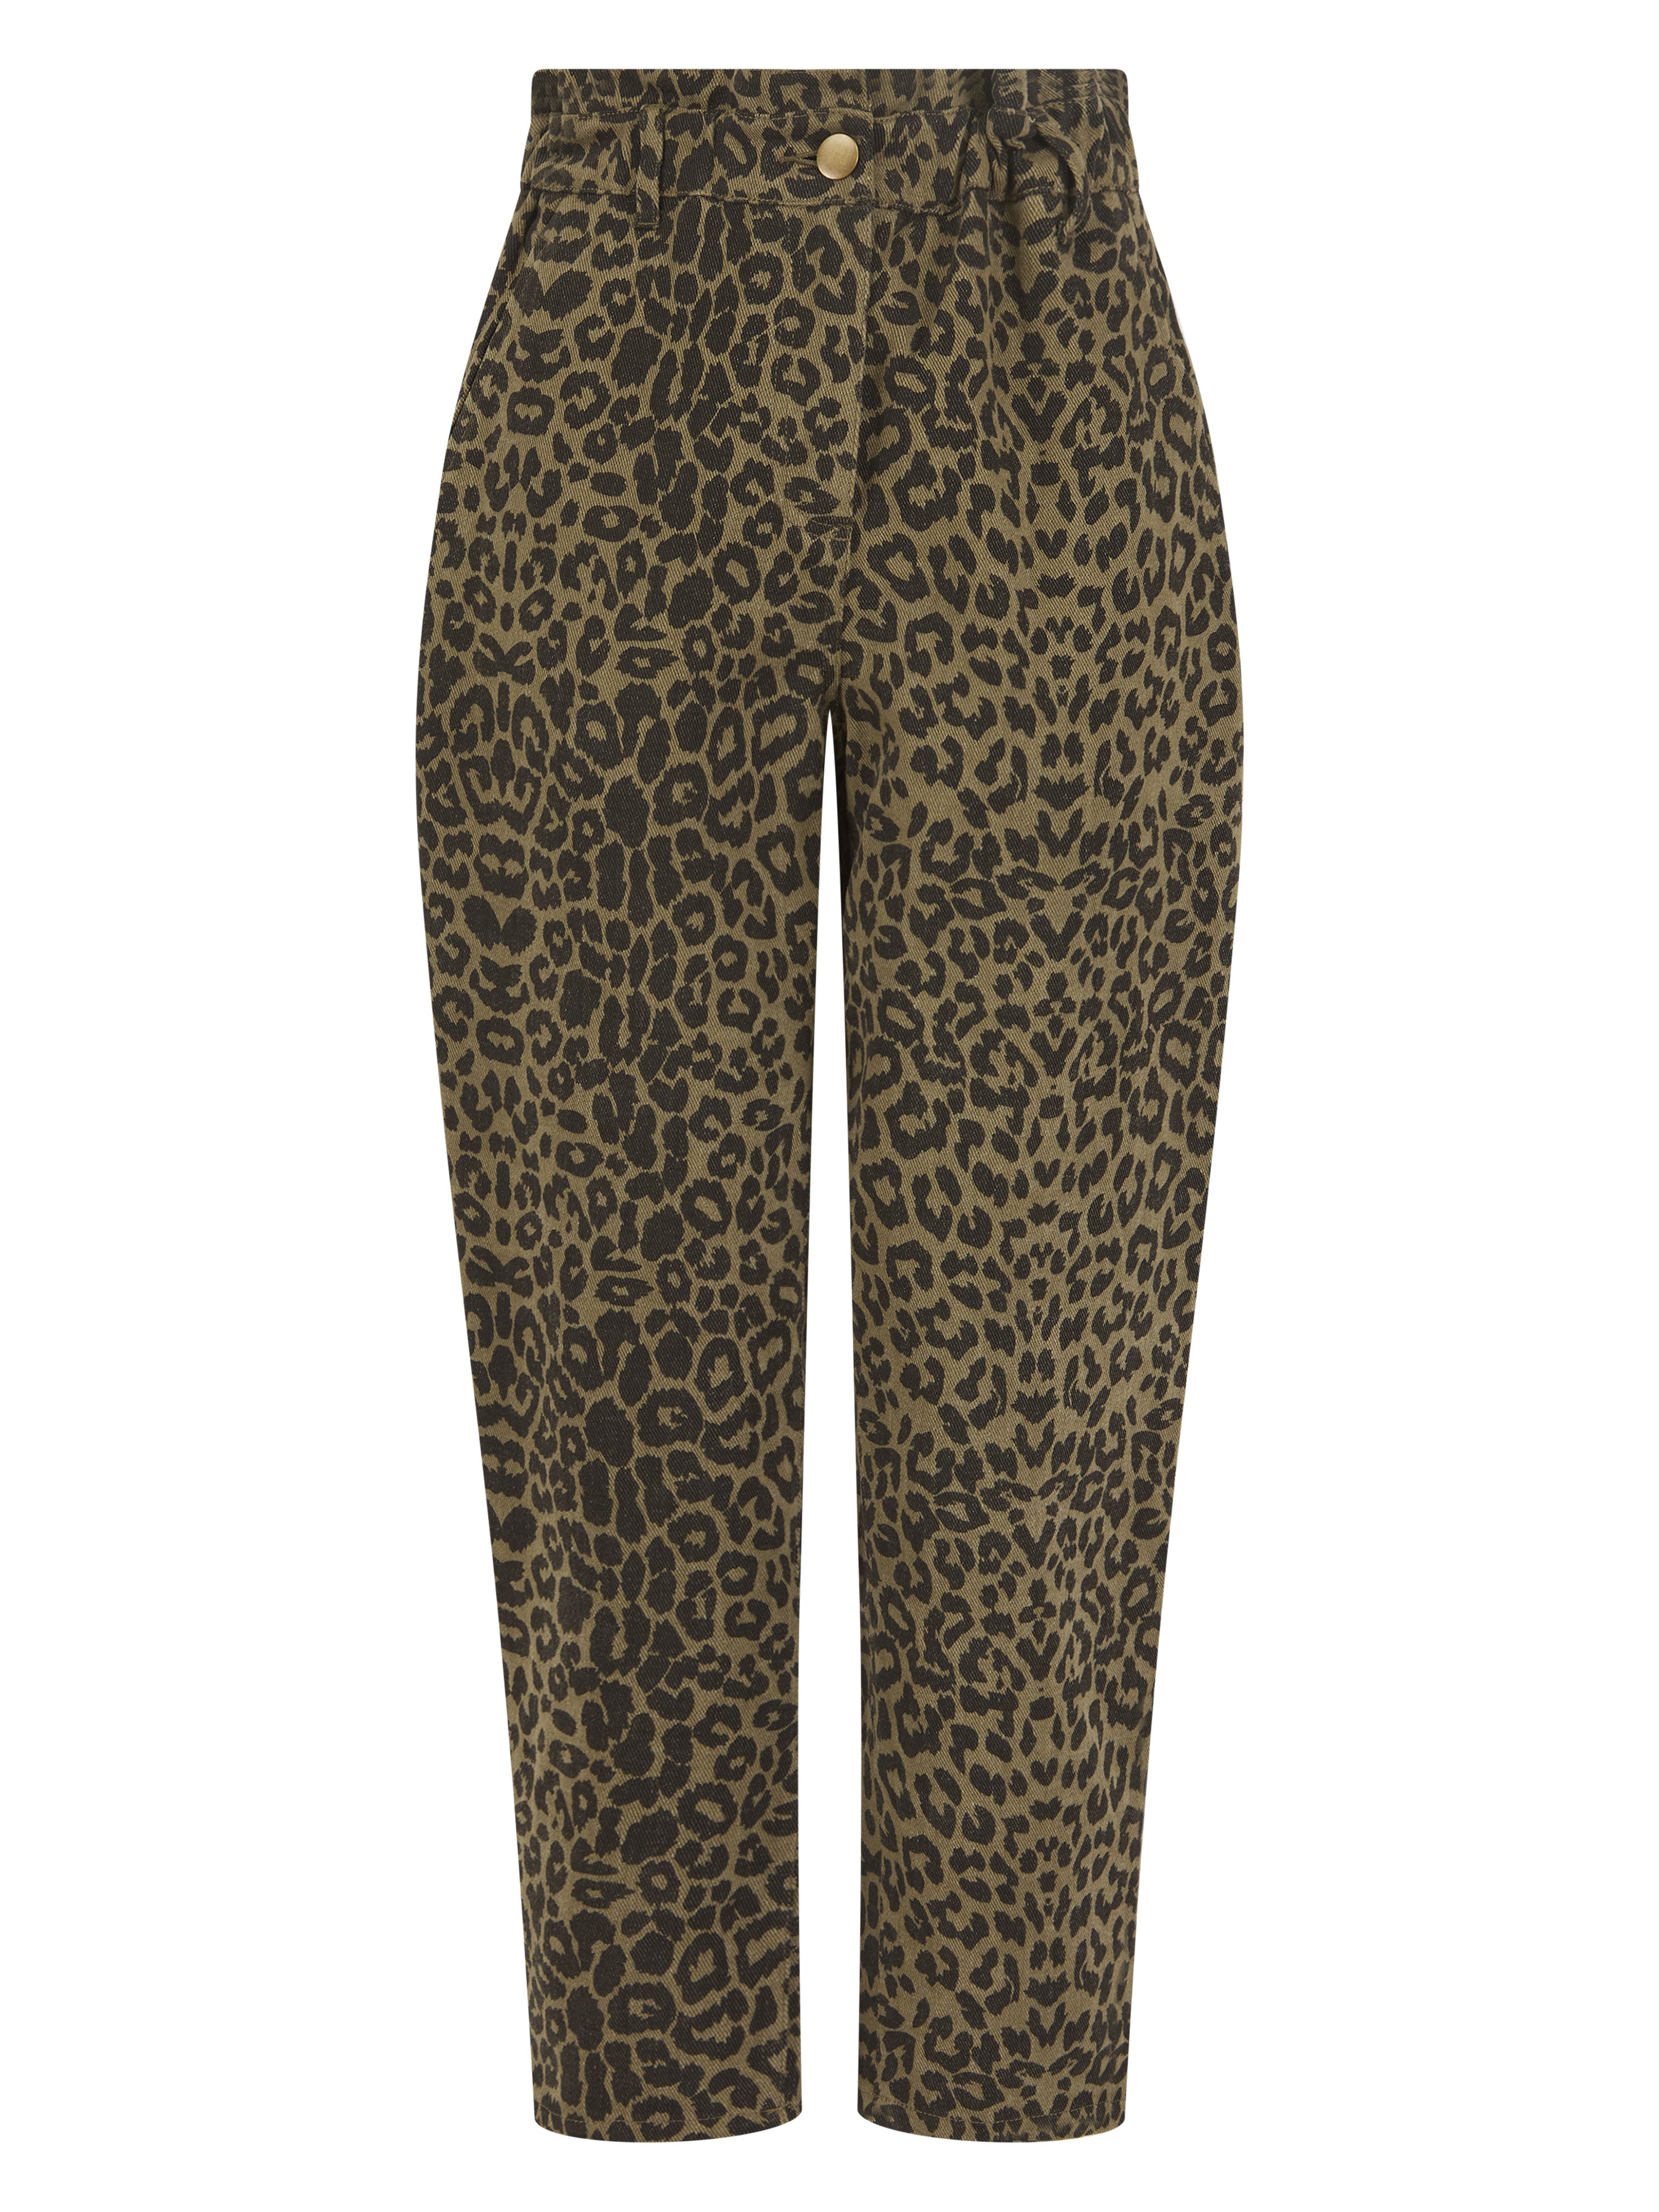 Caroline Leopard Trousers in Khaki